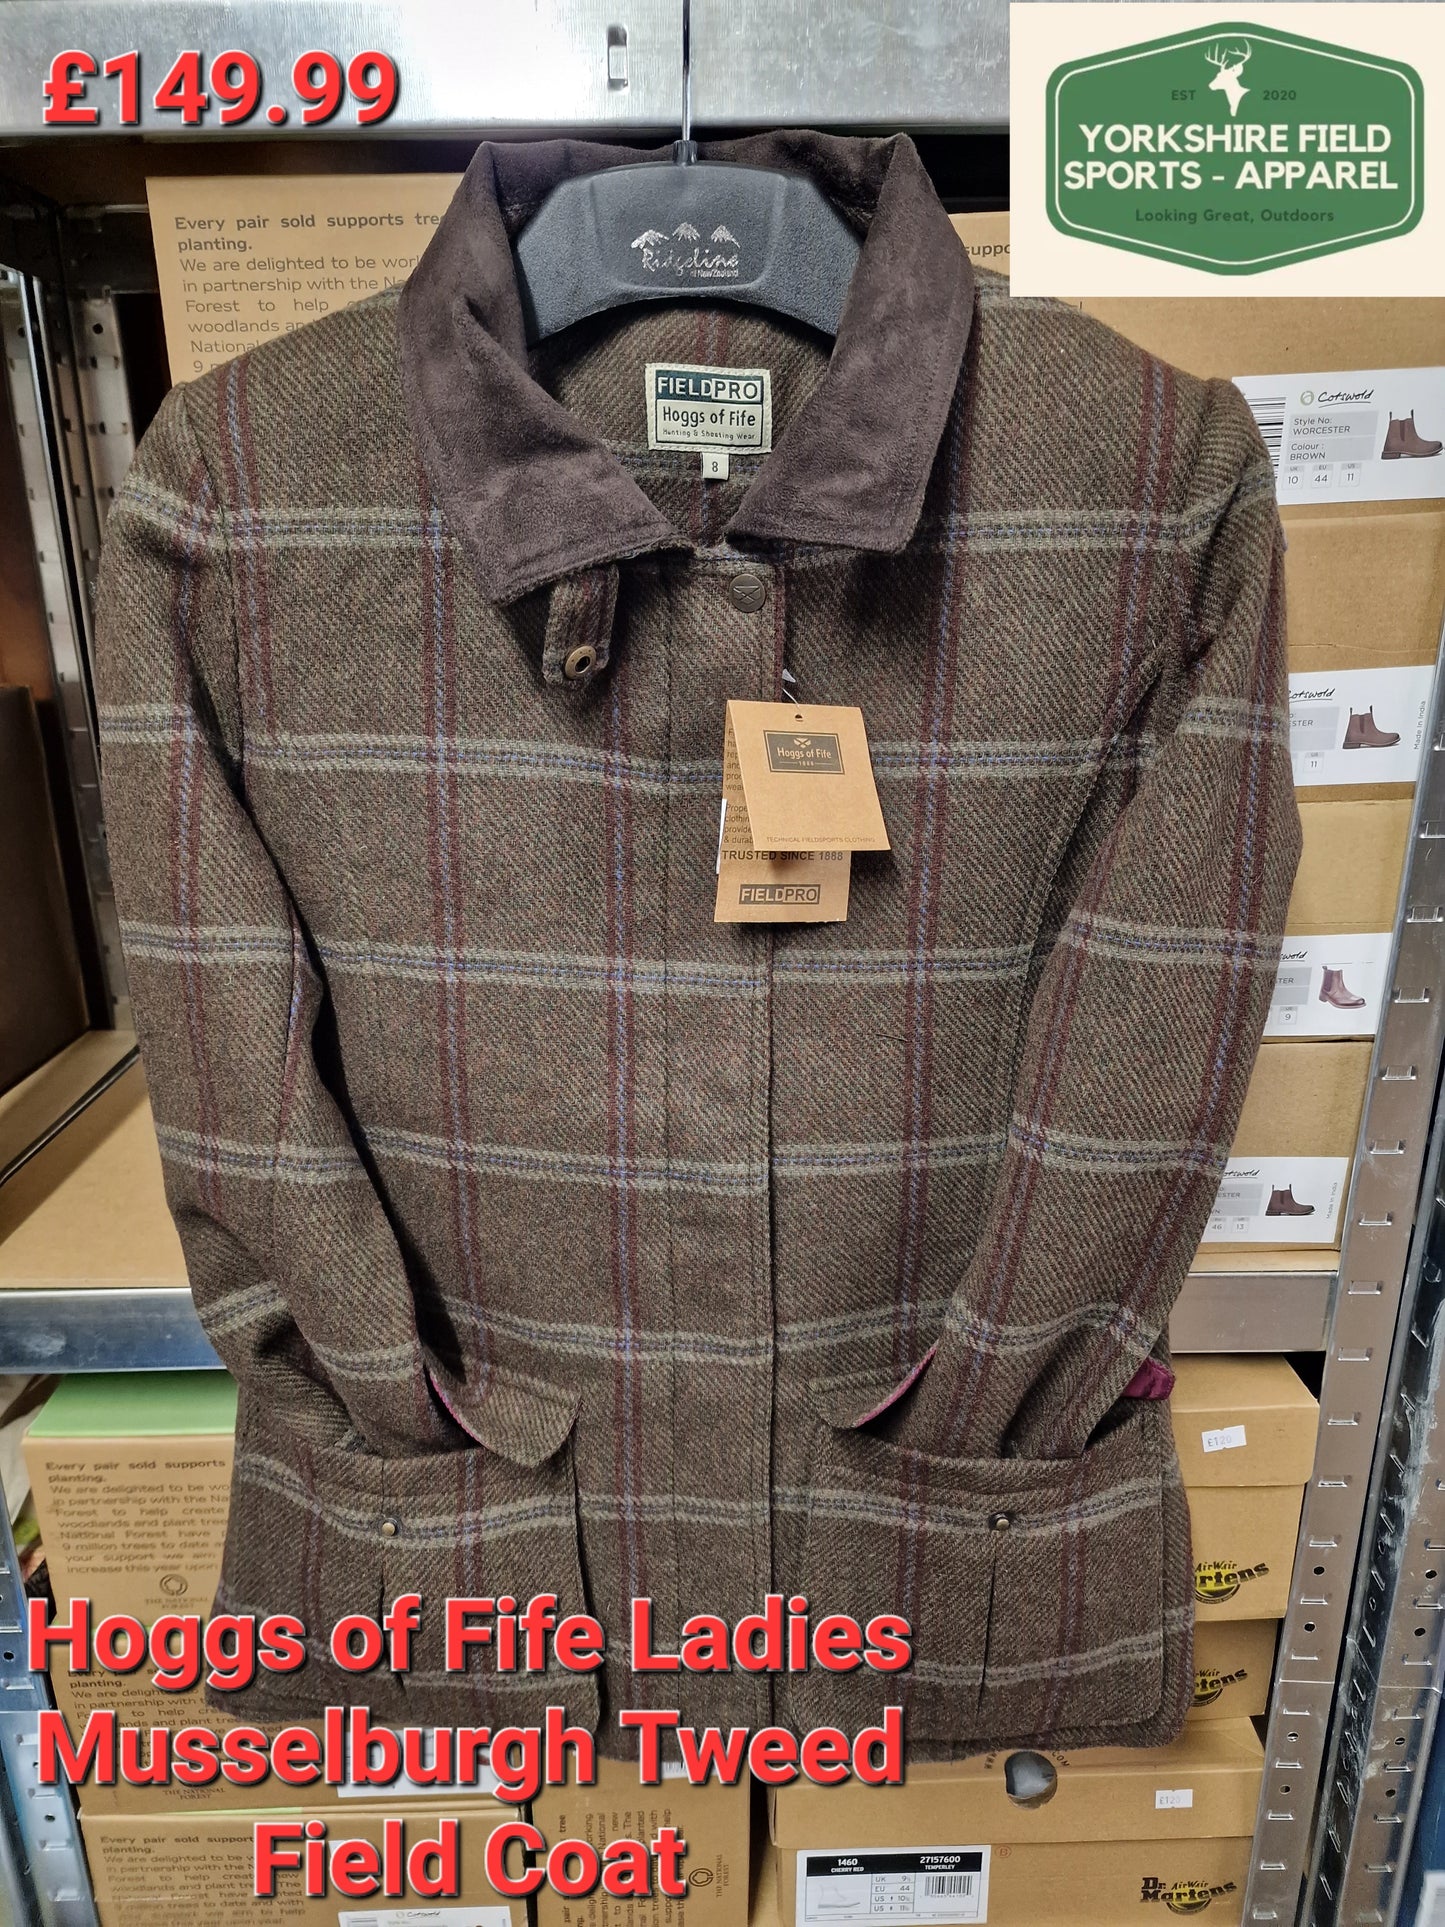 Ladies Hoggs of fife Musselburgh Tweed Field Coat